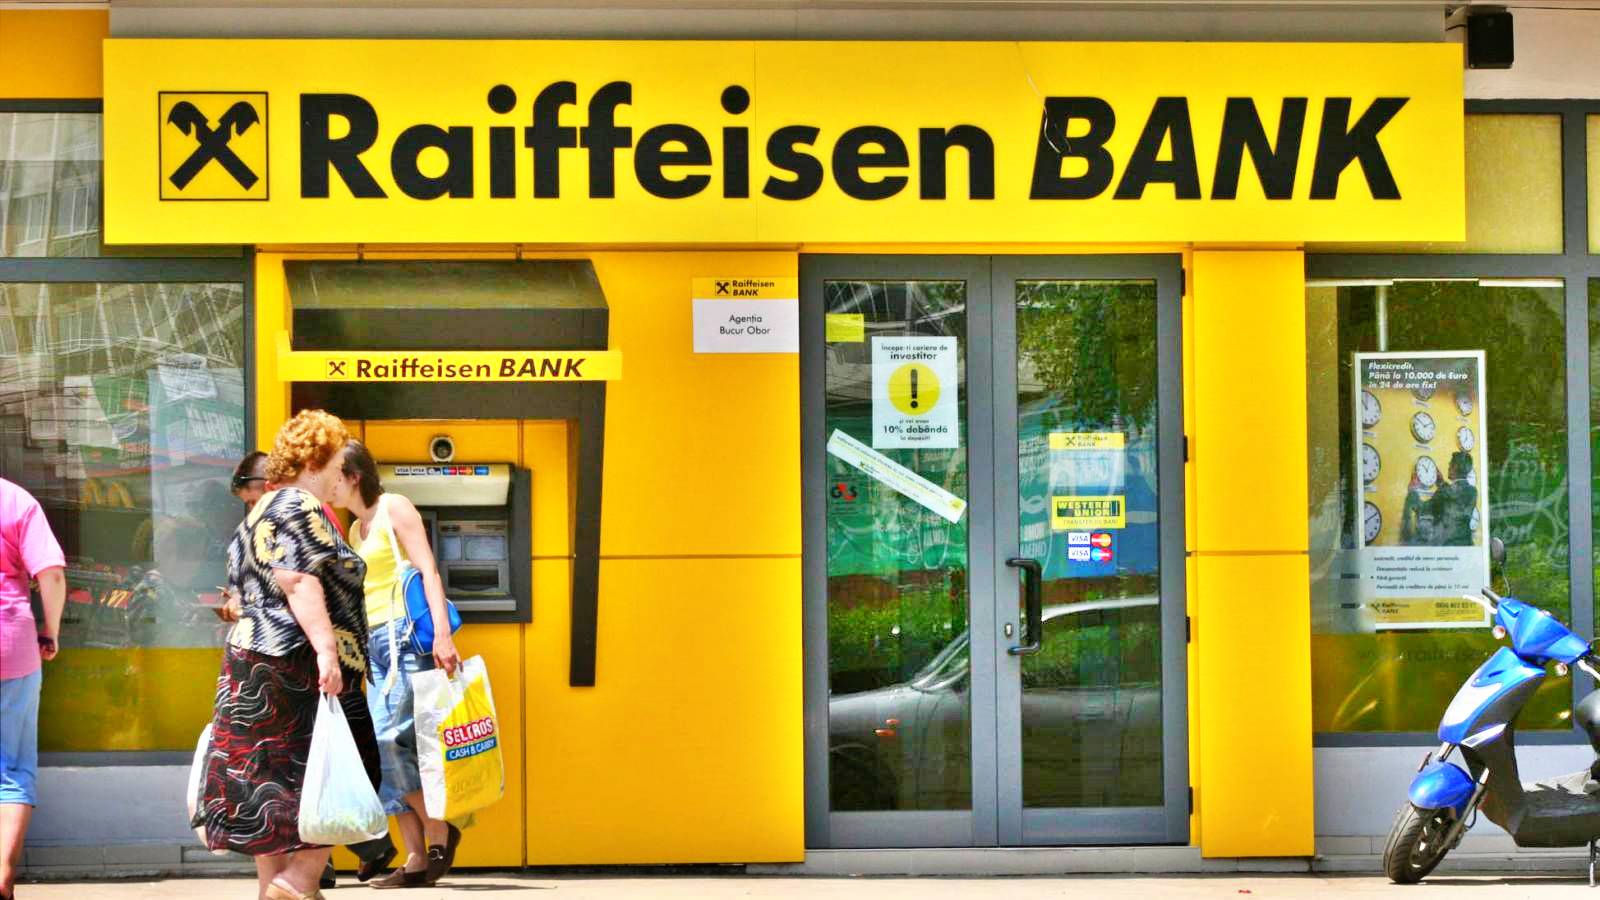 Raiffeisen Bank OBS! Faran som riktar sig mot kunder